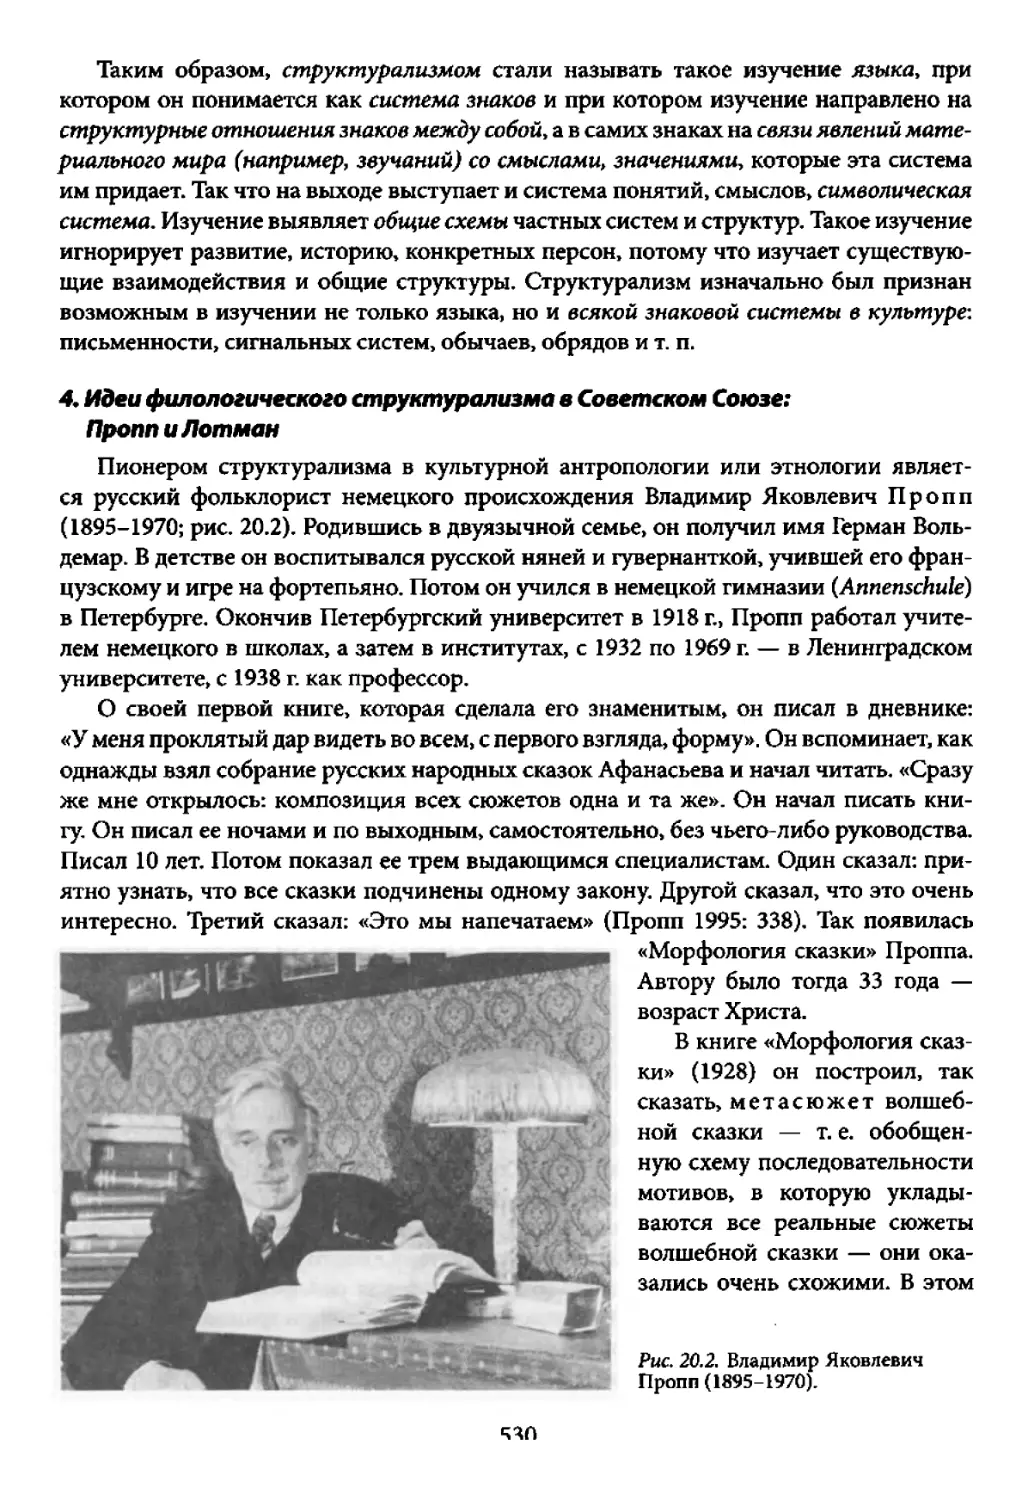 4. Идеи филологического структурализма в Советском Союзе: Пропп и Лотман